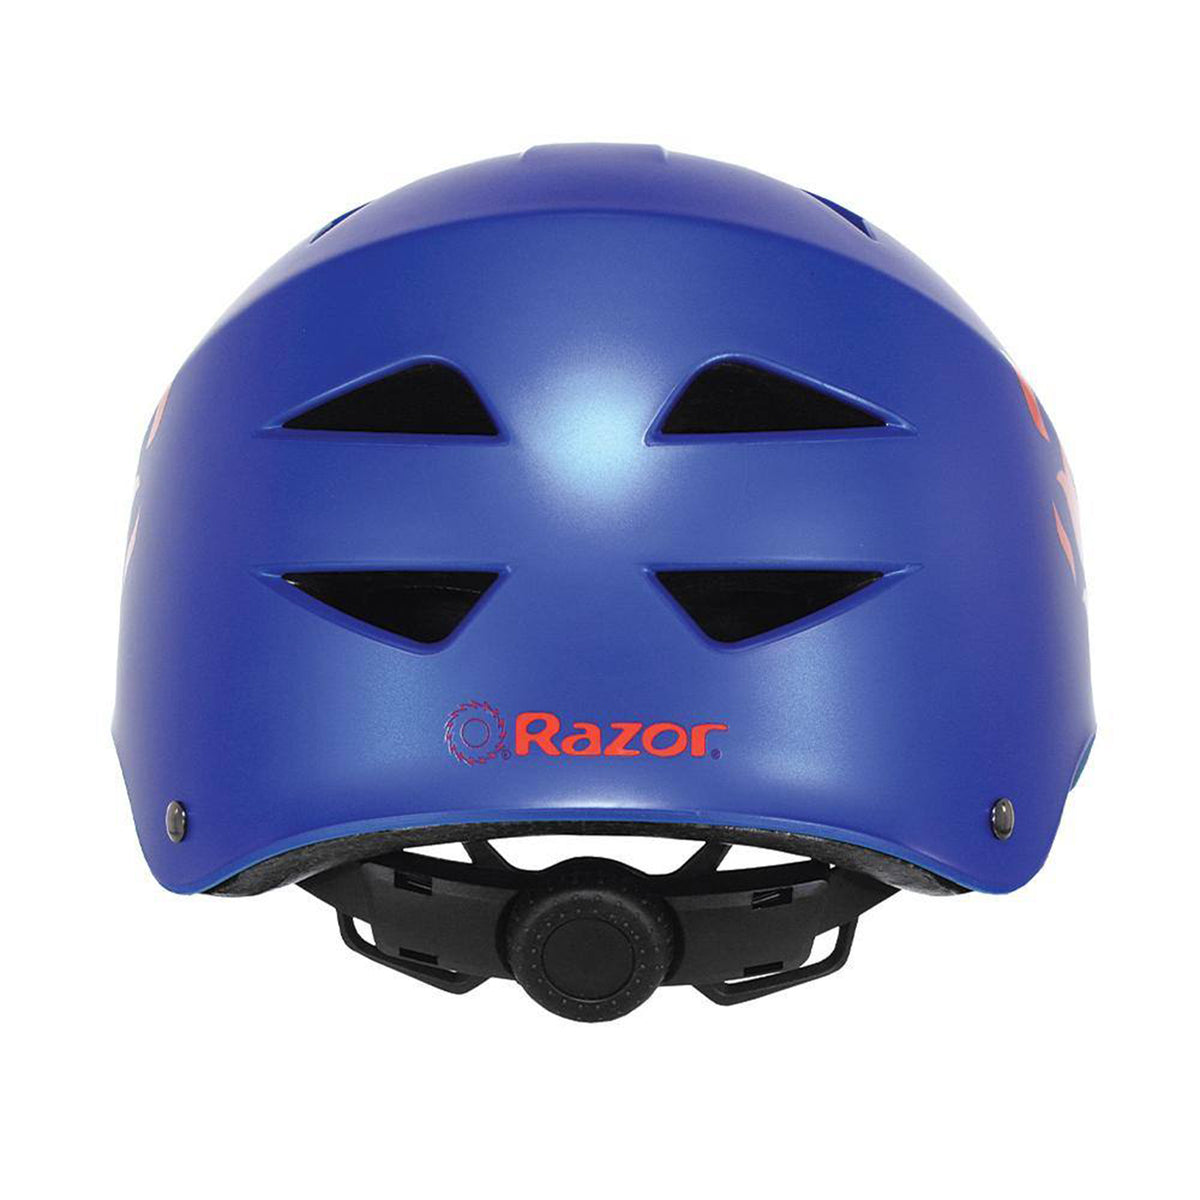 Razor® Blue Flame Child Multi-Sport Helmet | Helmet for kids Ages 5+